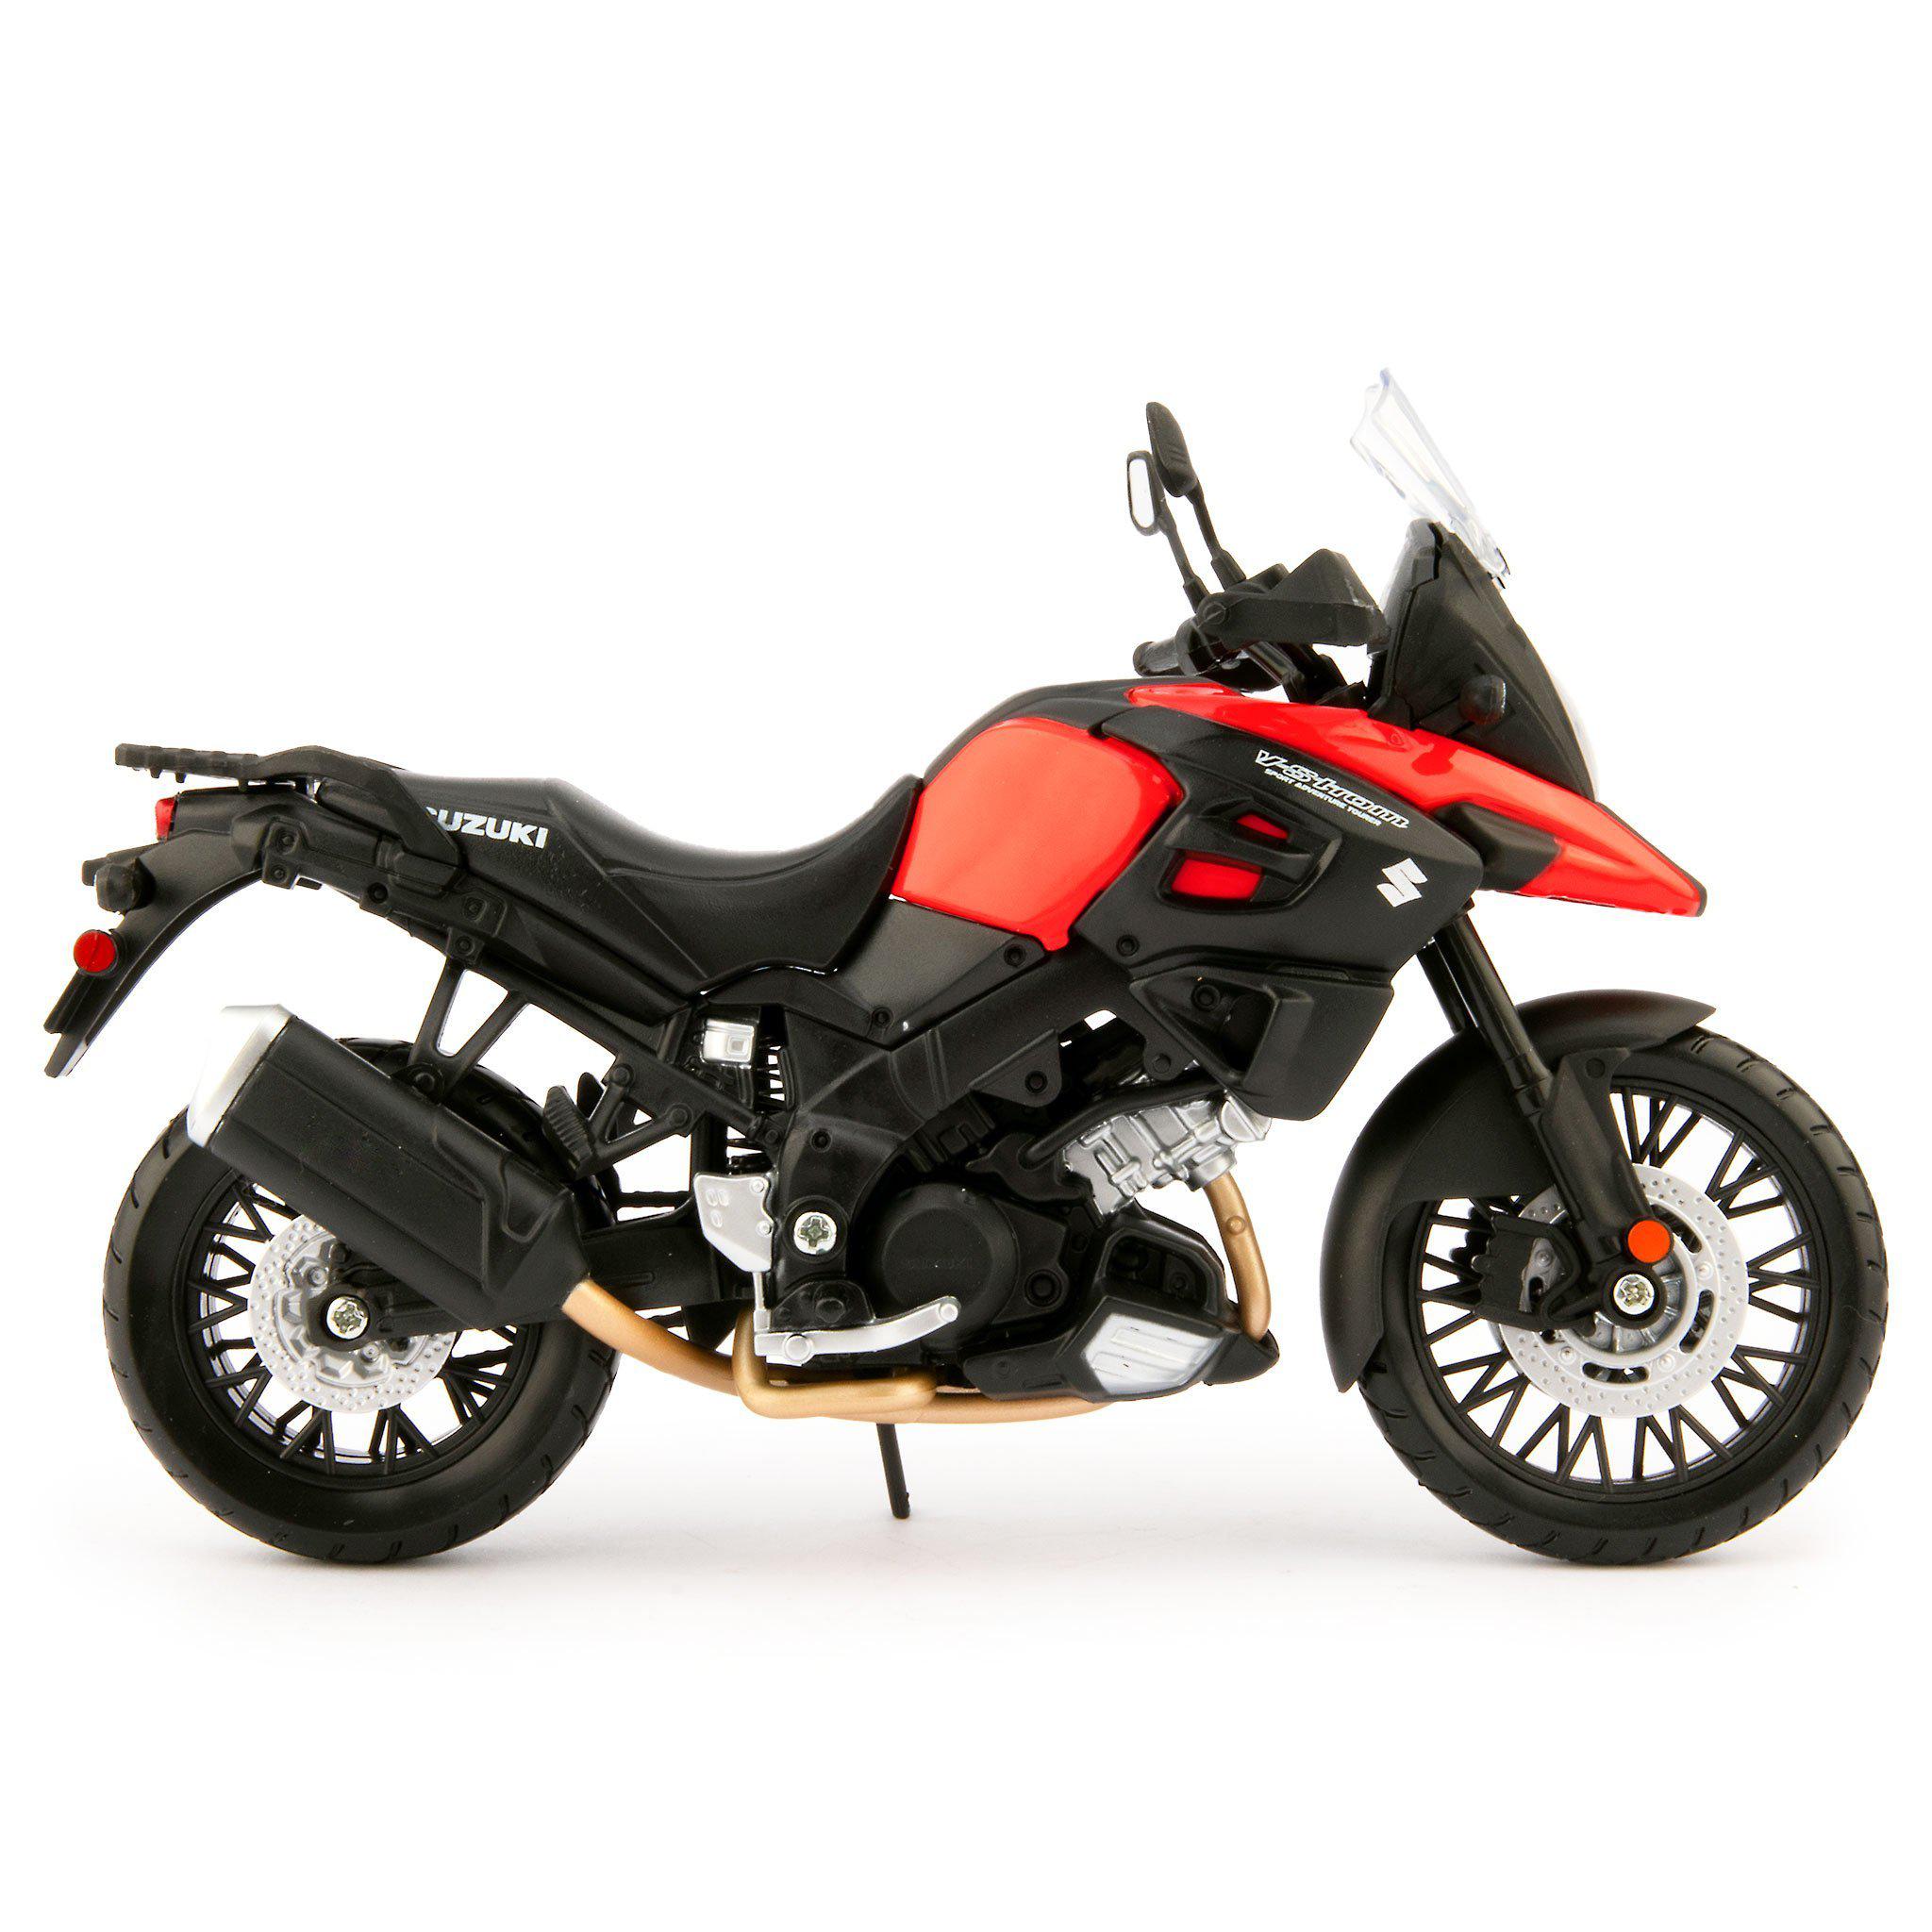 Suzuki V-Strom 1000 Diecast Model Motorcycle red - 1:12 Scale-Maisto-Diecast Model Centre